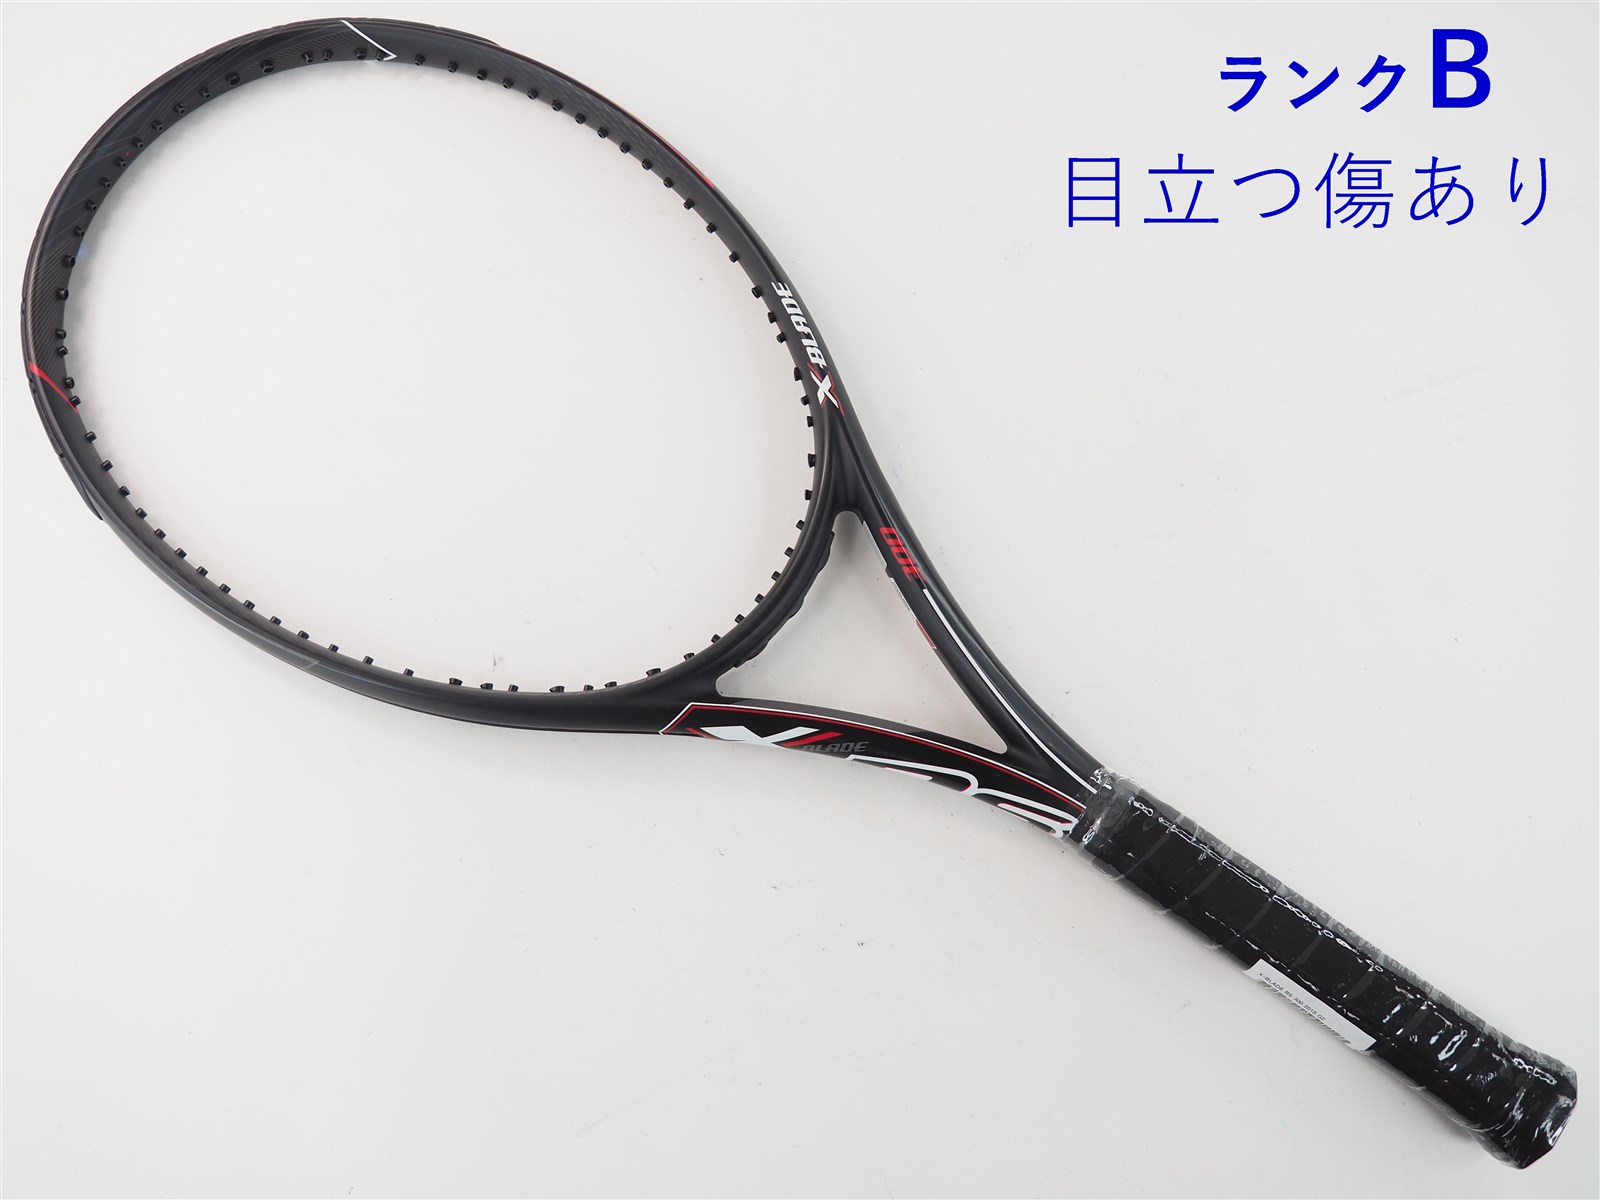 ブリヂストン テニスラケット エックスブレードBX300 G2 - ラケット 